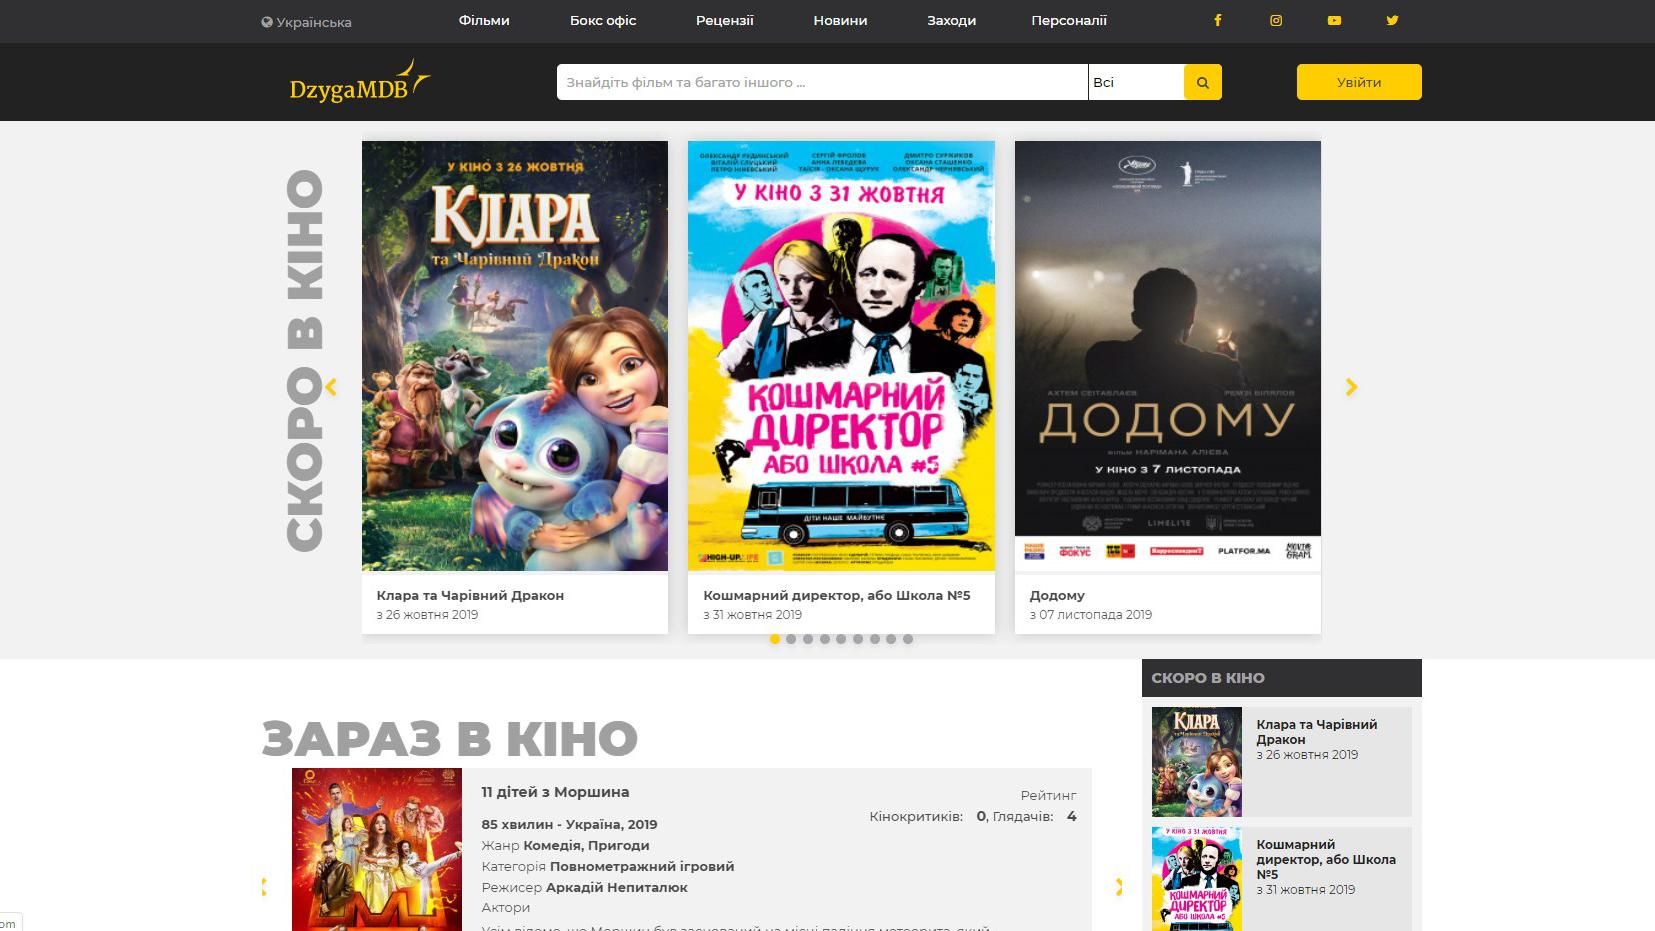 В Украине запустили киноресурс, похожий на IMDb: на сайте DzygaMDb будут все украинские новинки